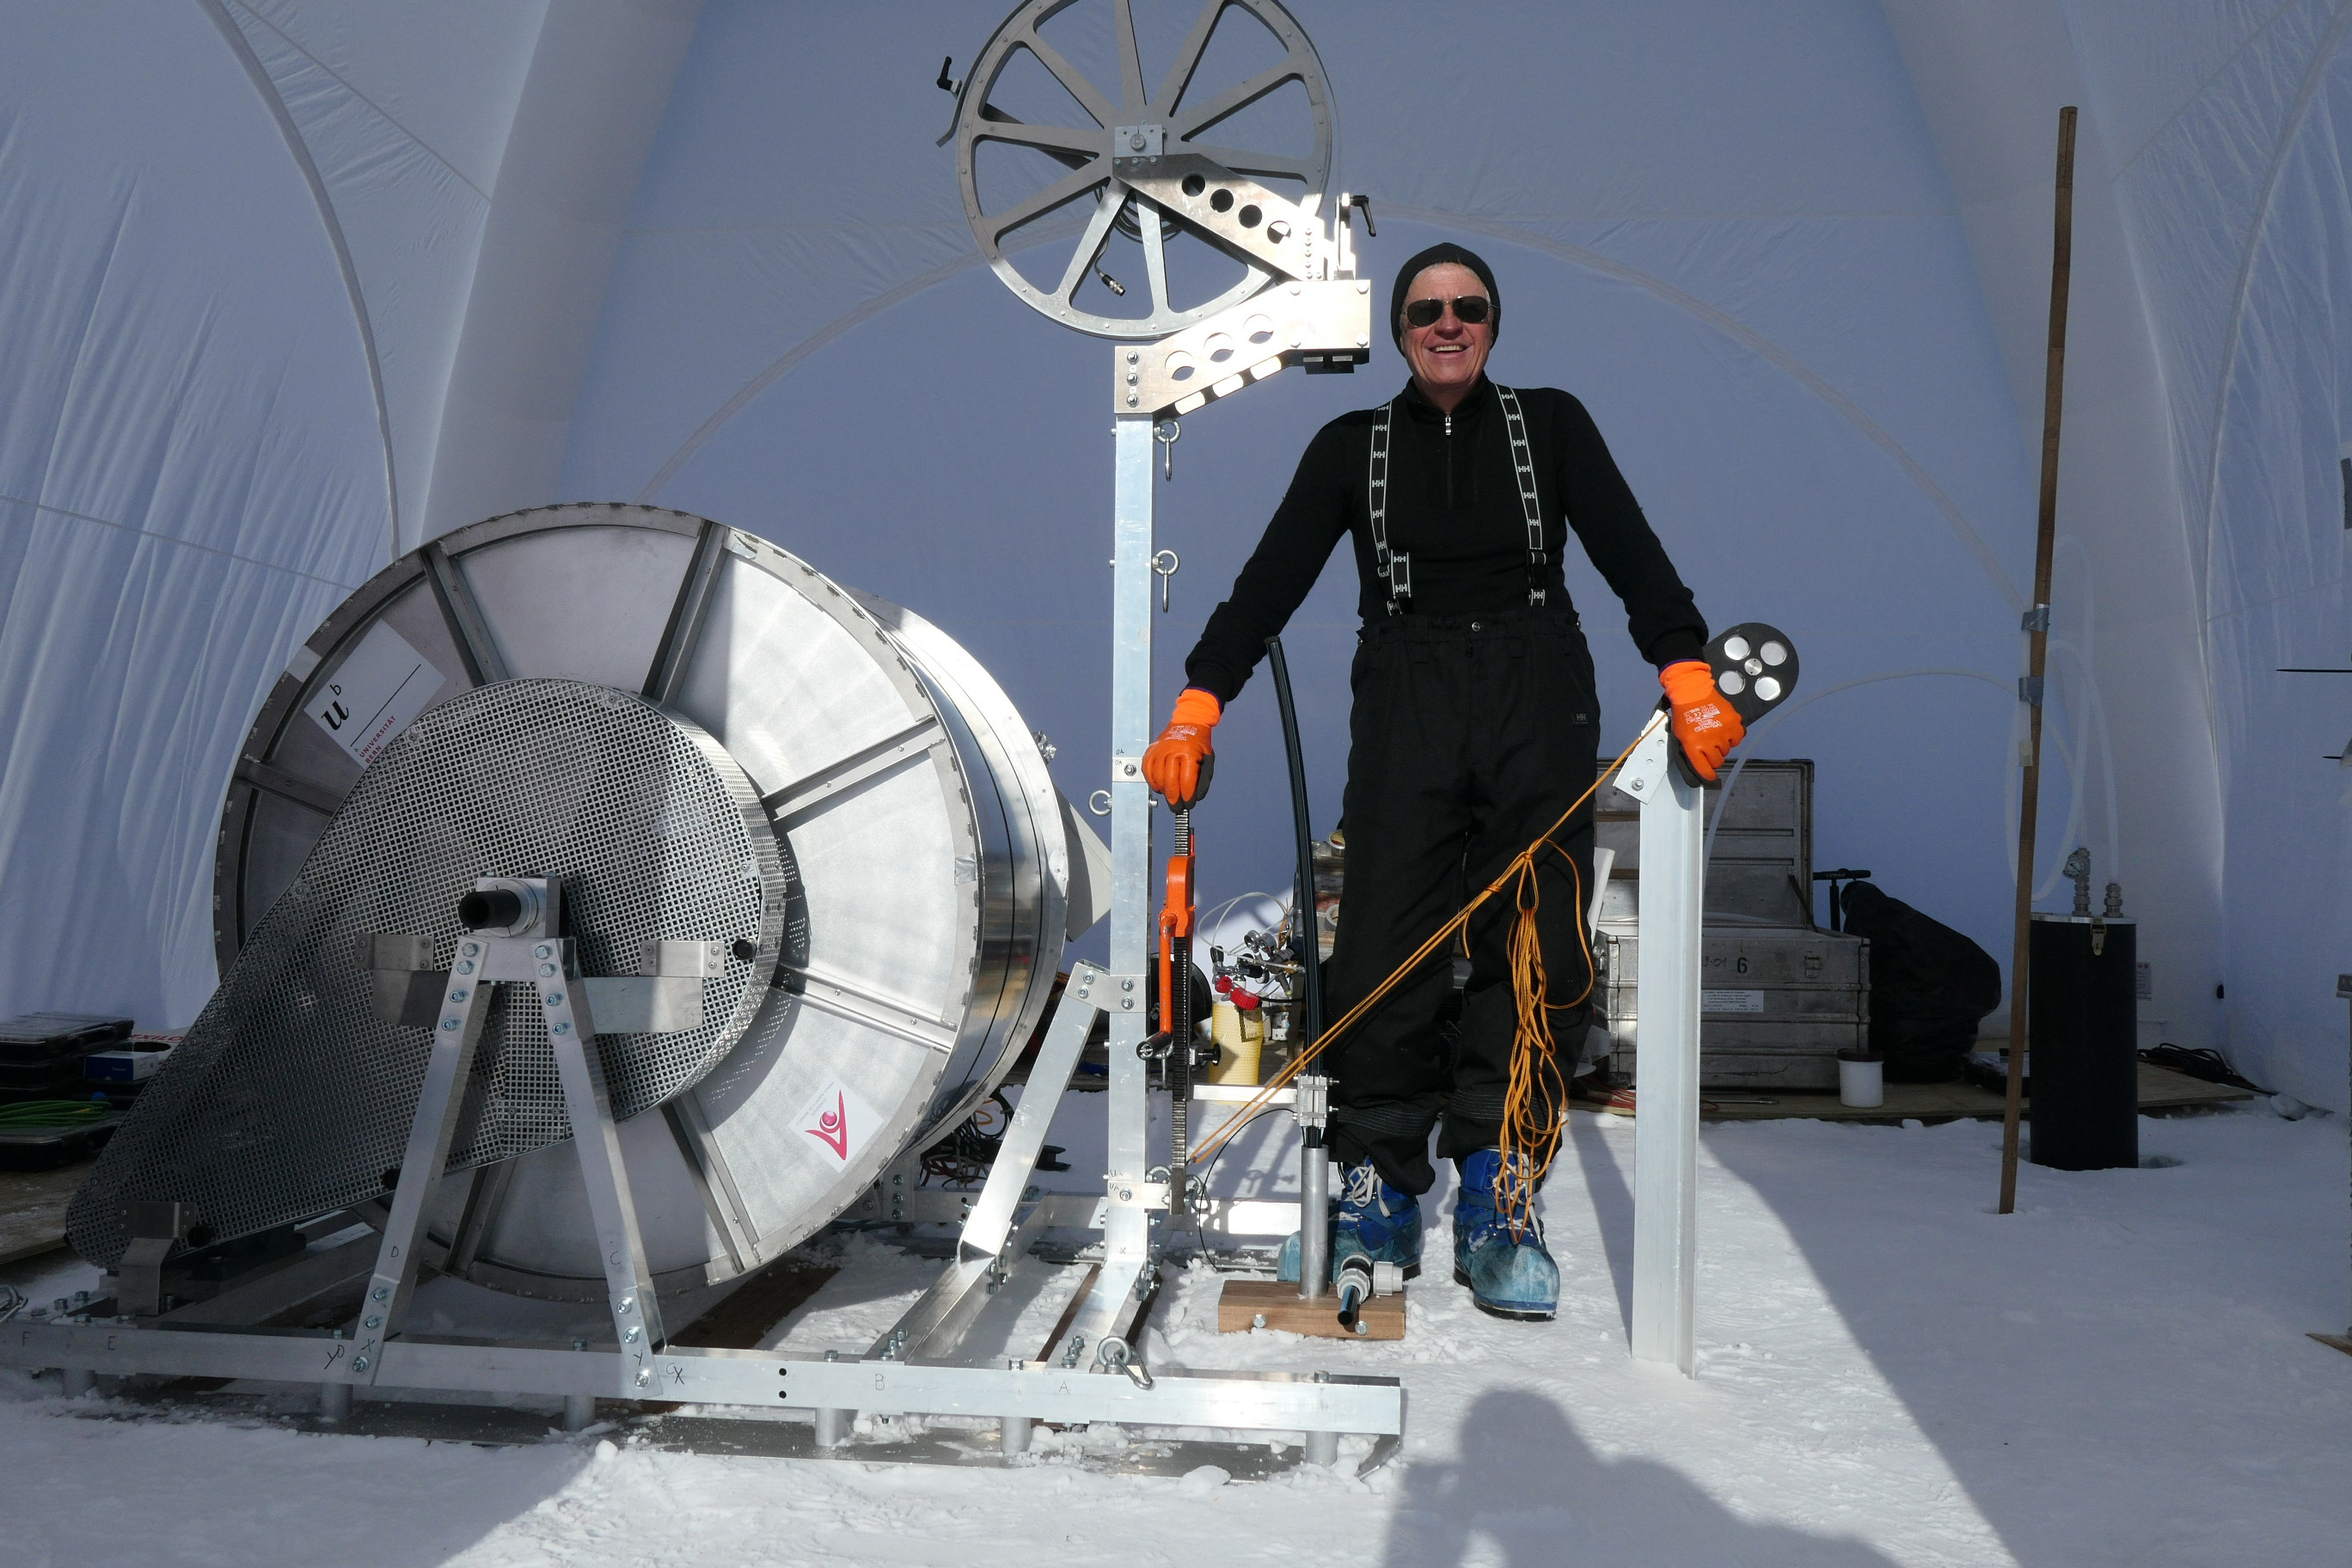 Thomas Stocker, uno de los premiados, en una de sus 'expediciones' a las burbujas atrapadas en el hielo.